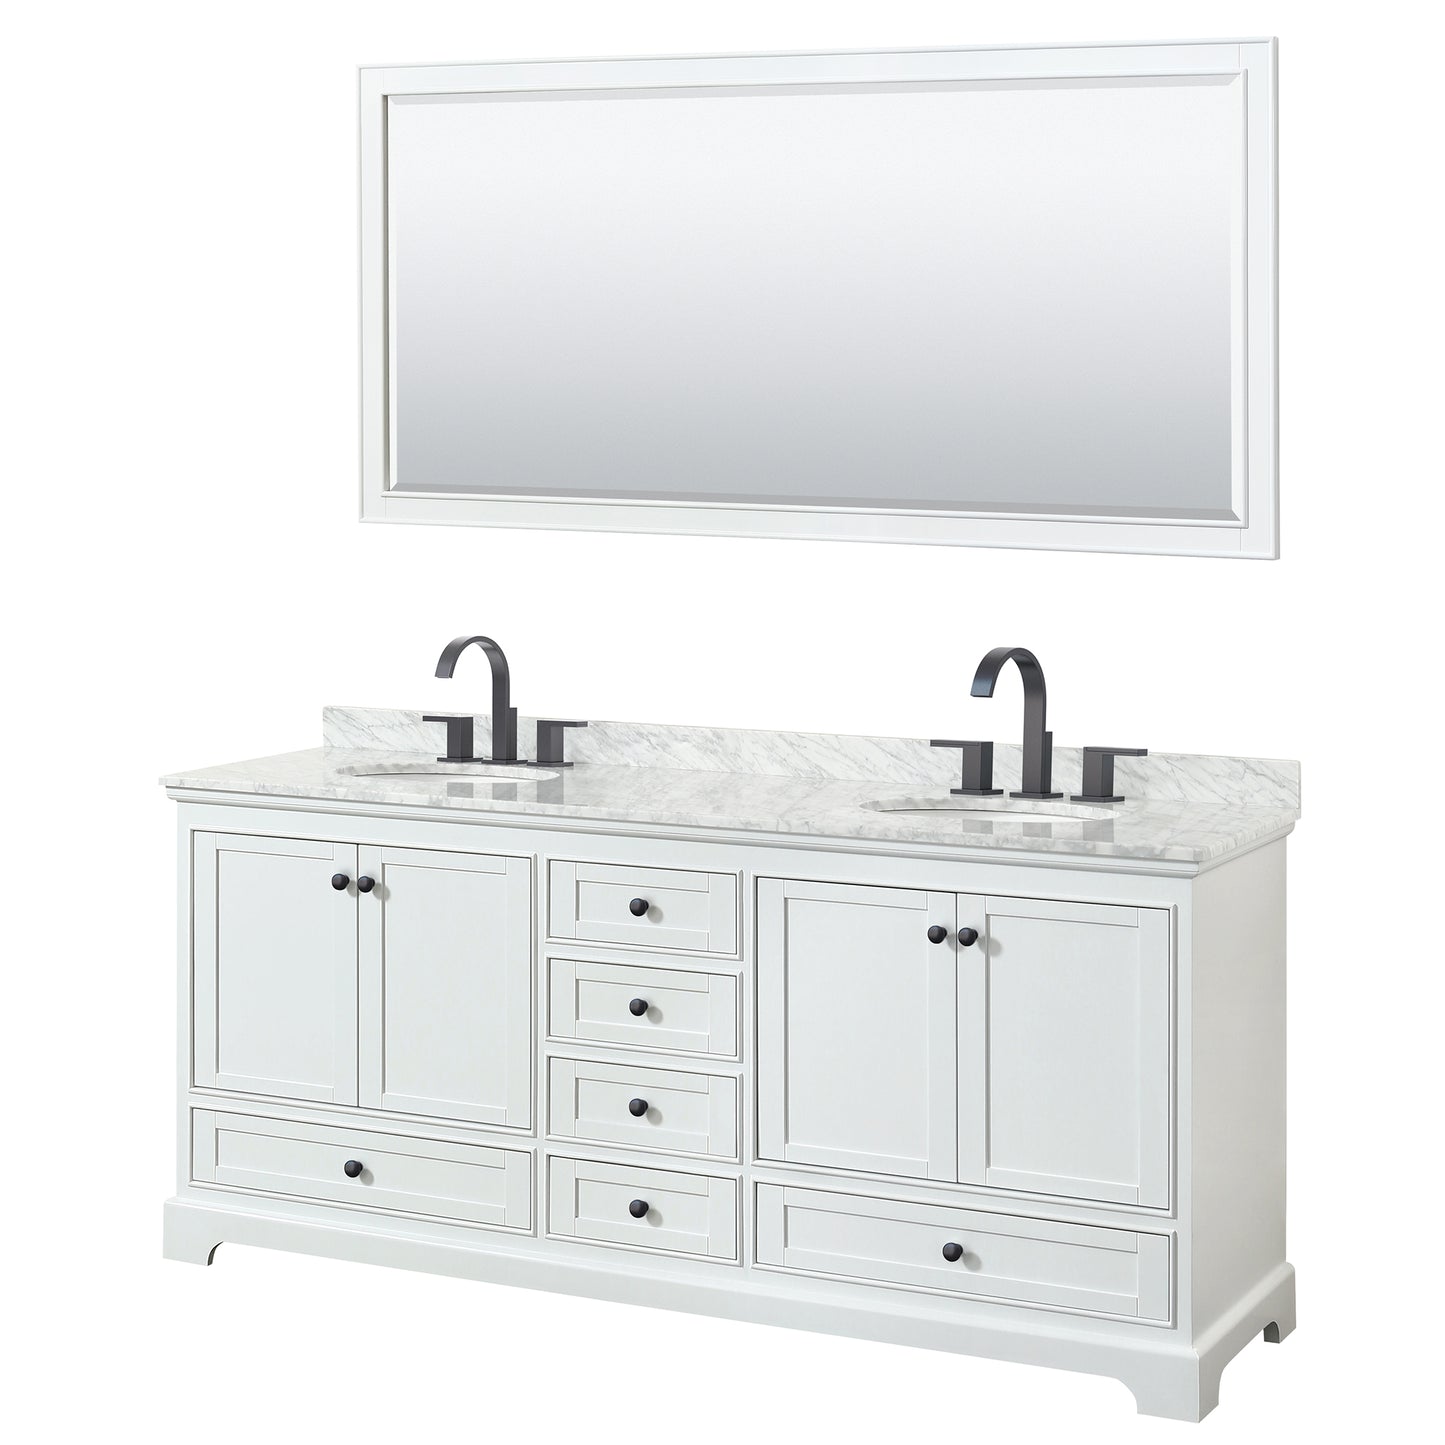 Wyndham Deborah 80 Inch Double Bathroom Vanity Undermount Oval Sinks in Matte Black Trim with 70 Inch Mirror - Luxe Bathroom Vanities